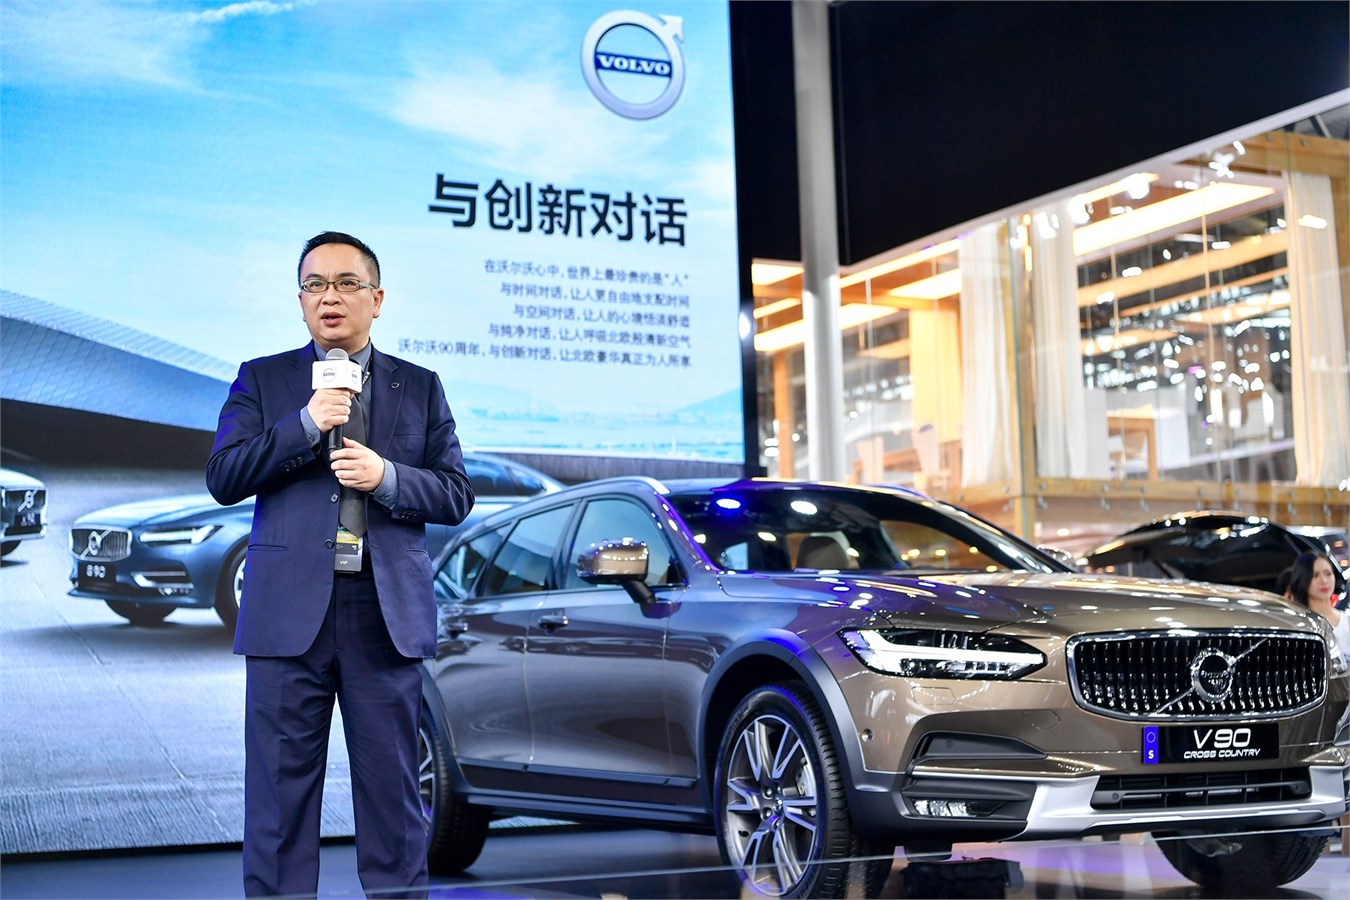 沃尔沃汽车集团大中华销售区总裁陈立哲先生致辞